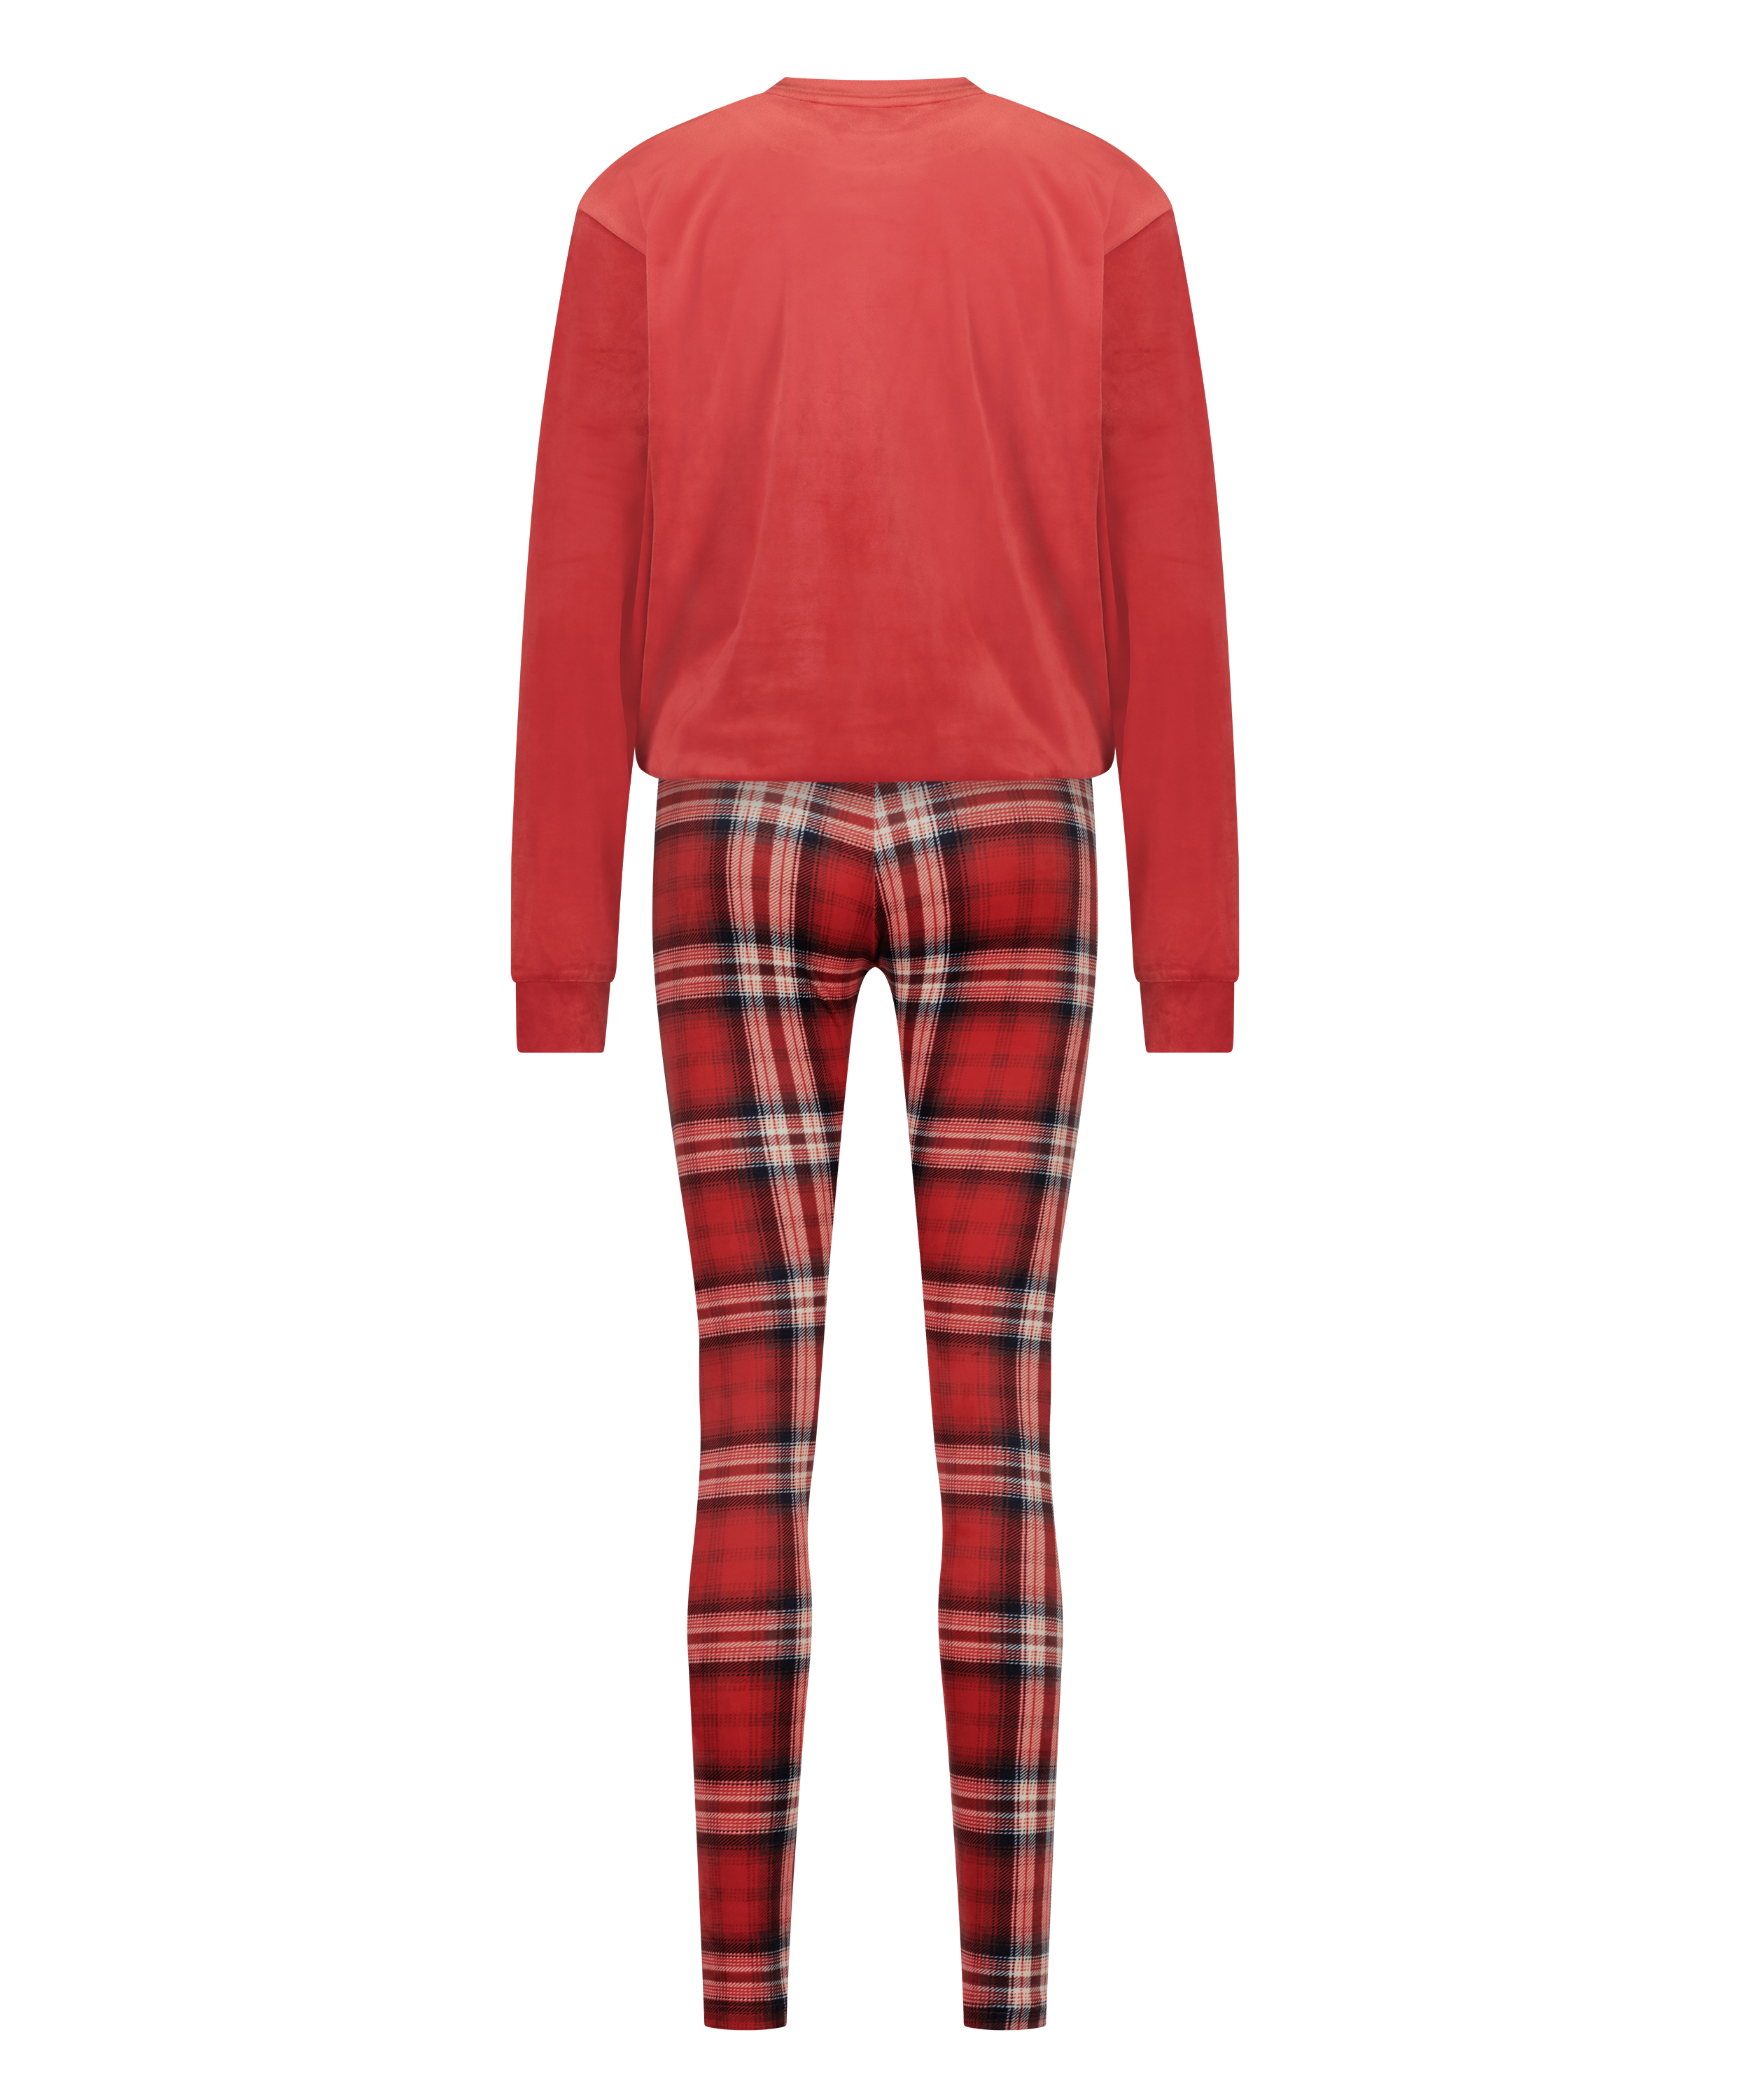 Pyjamaset with Bag, Red, main